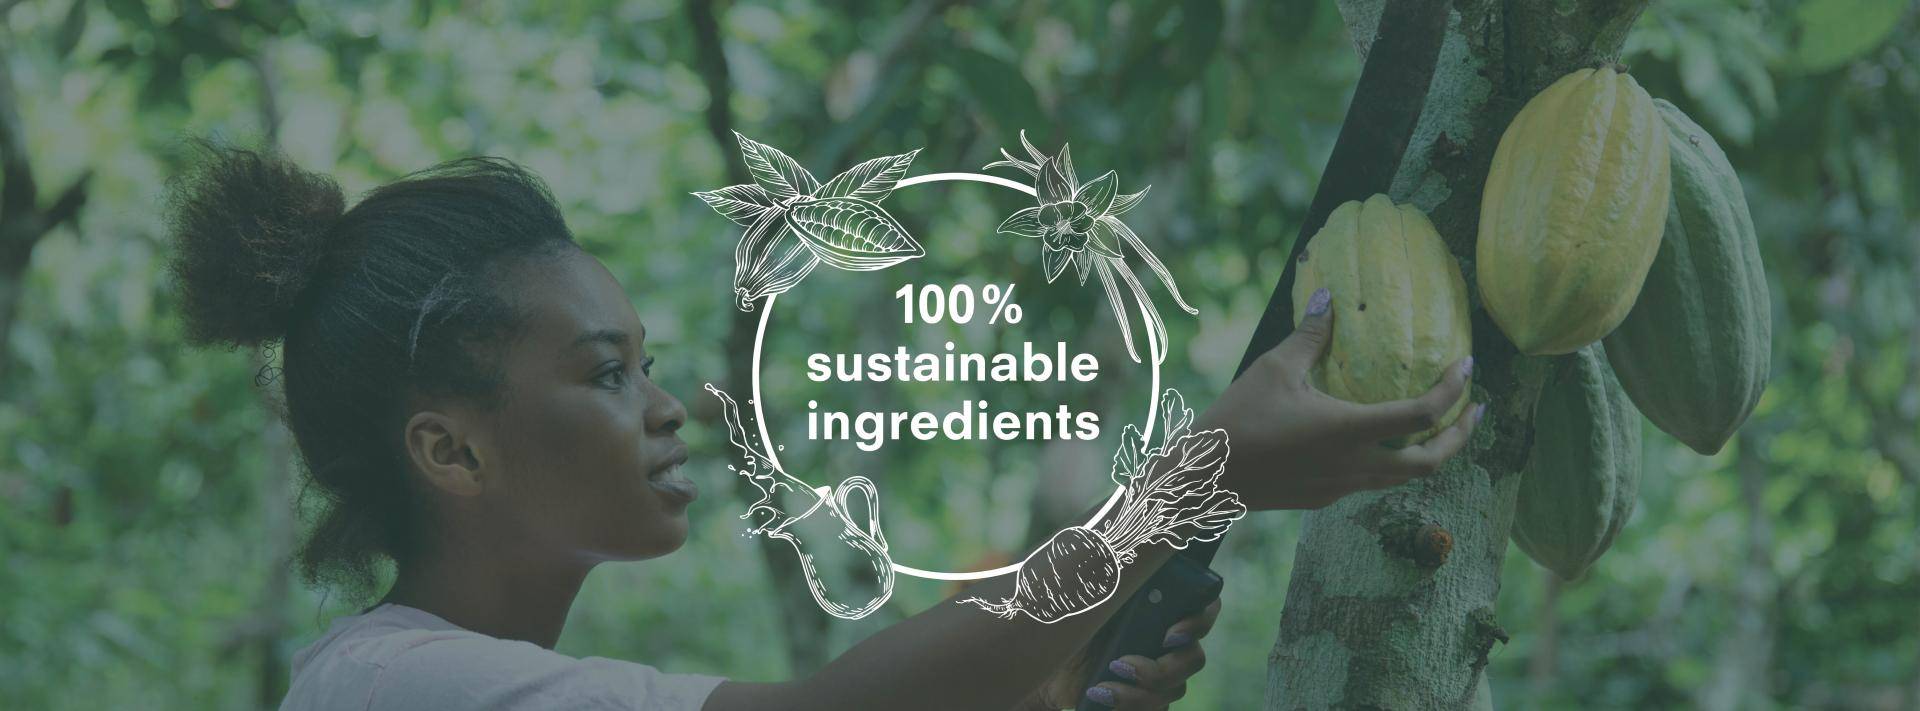 banner com o logo de 100% ingredientes sustentáveis